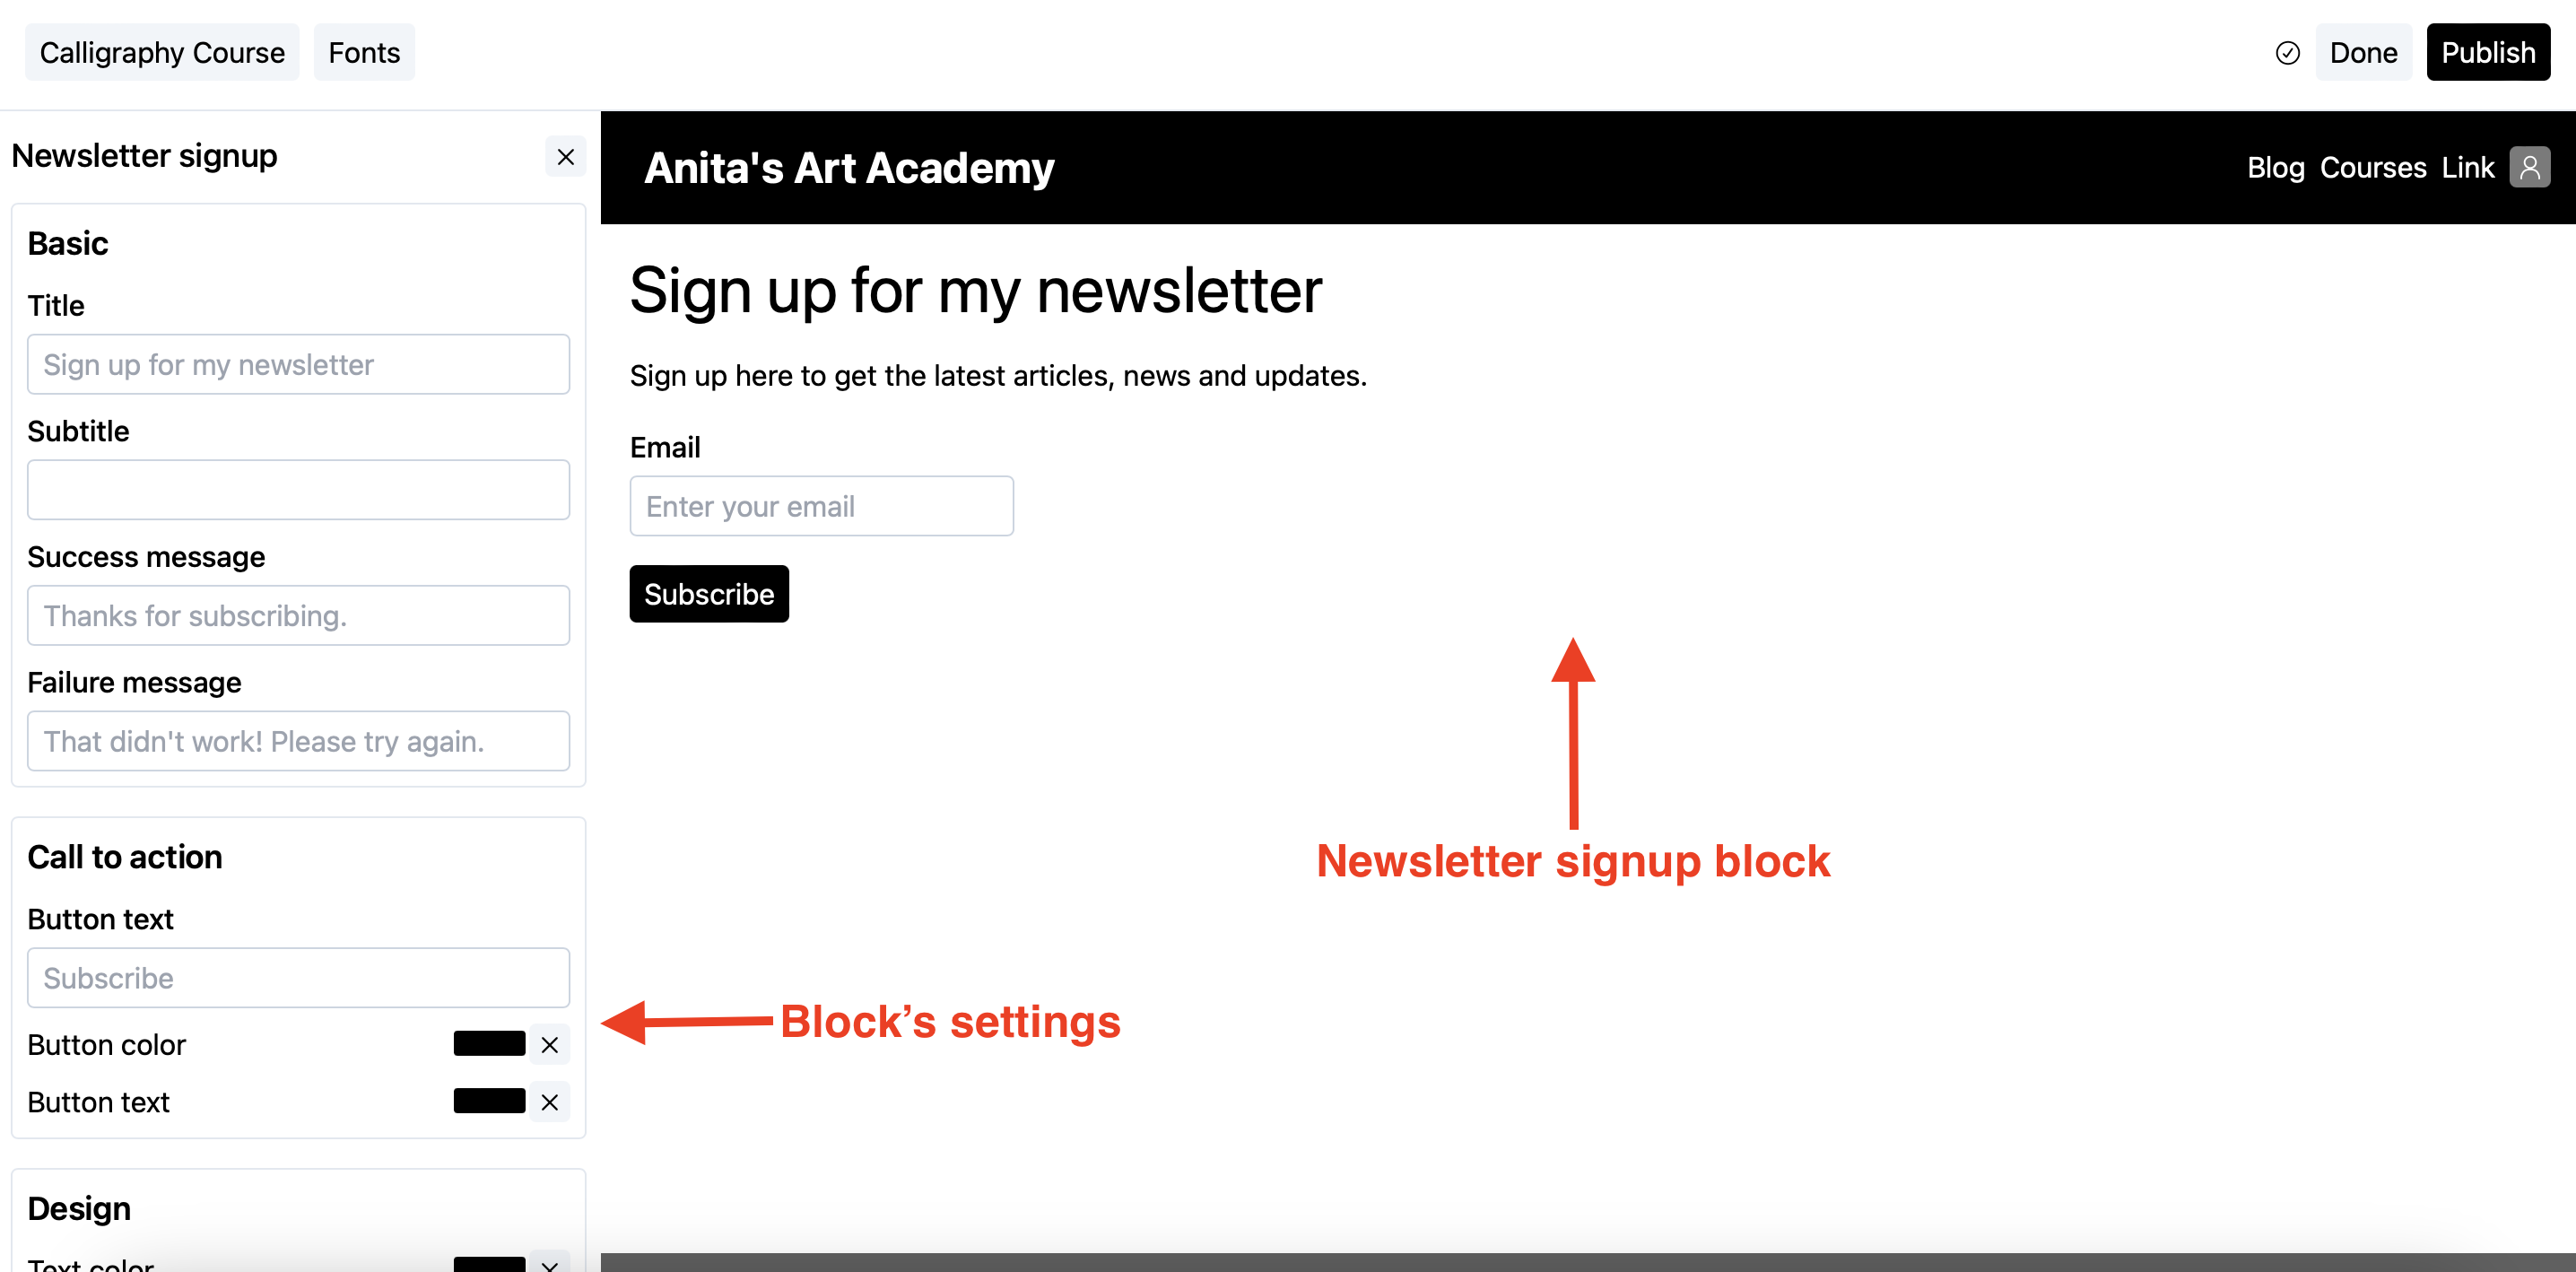 Newsletter signup block